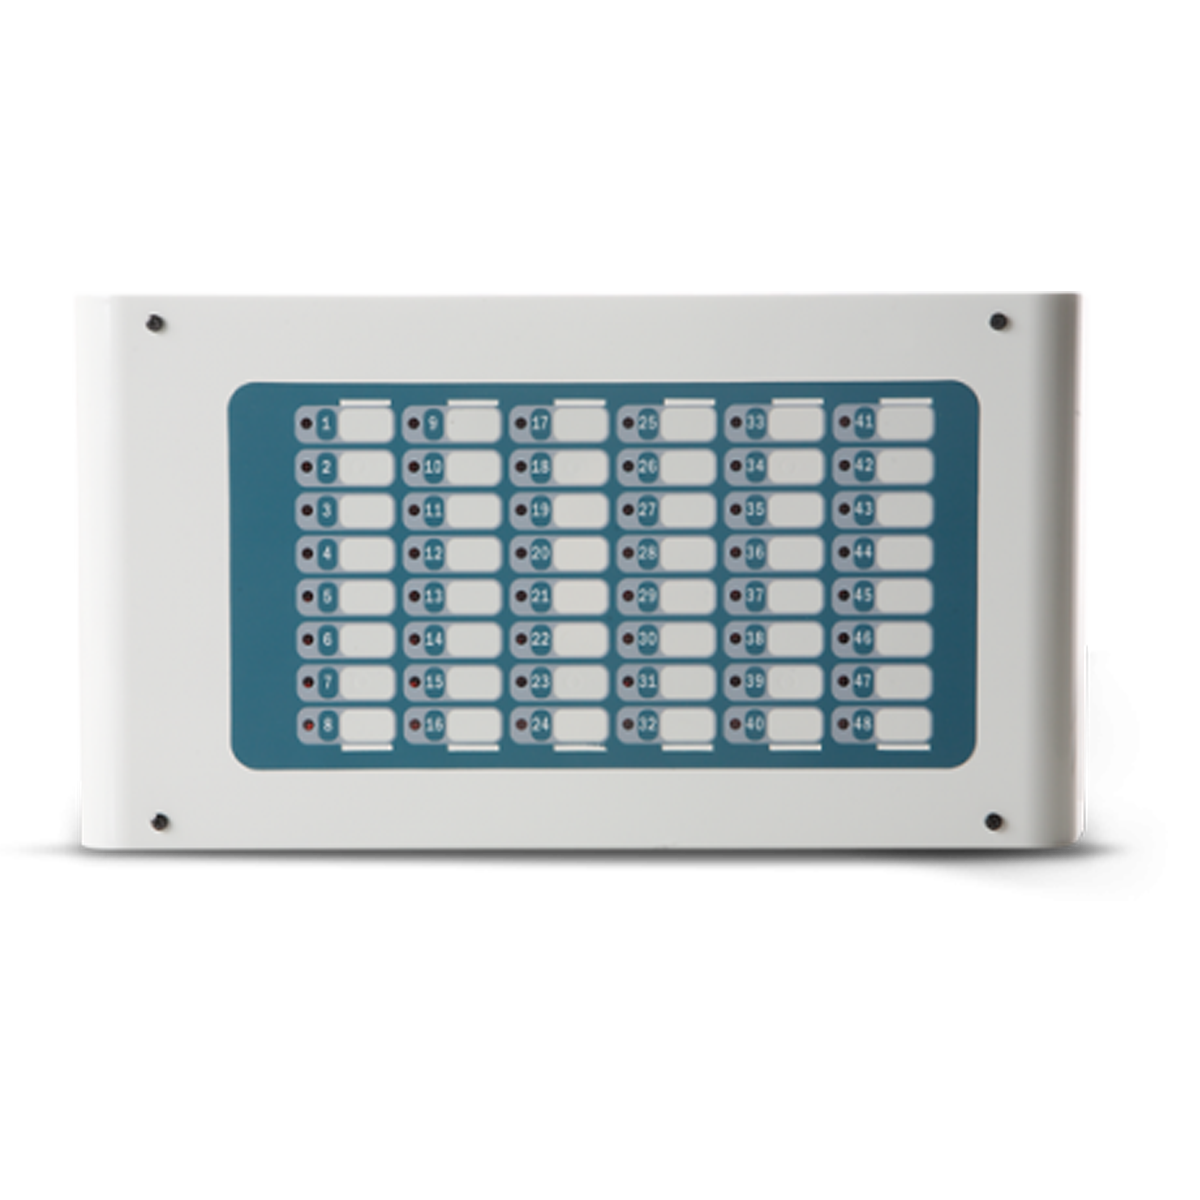 SMARTLETUSEE/LCD - PANEL REPETIDOR (PARA SMARTLOOP)